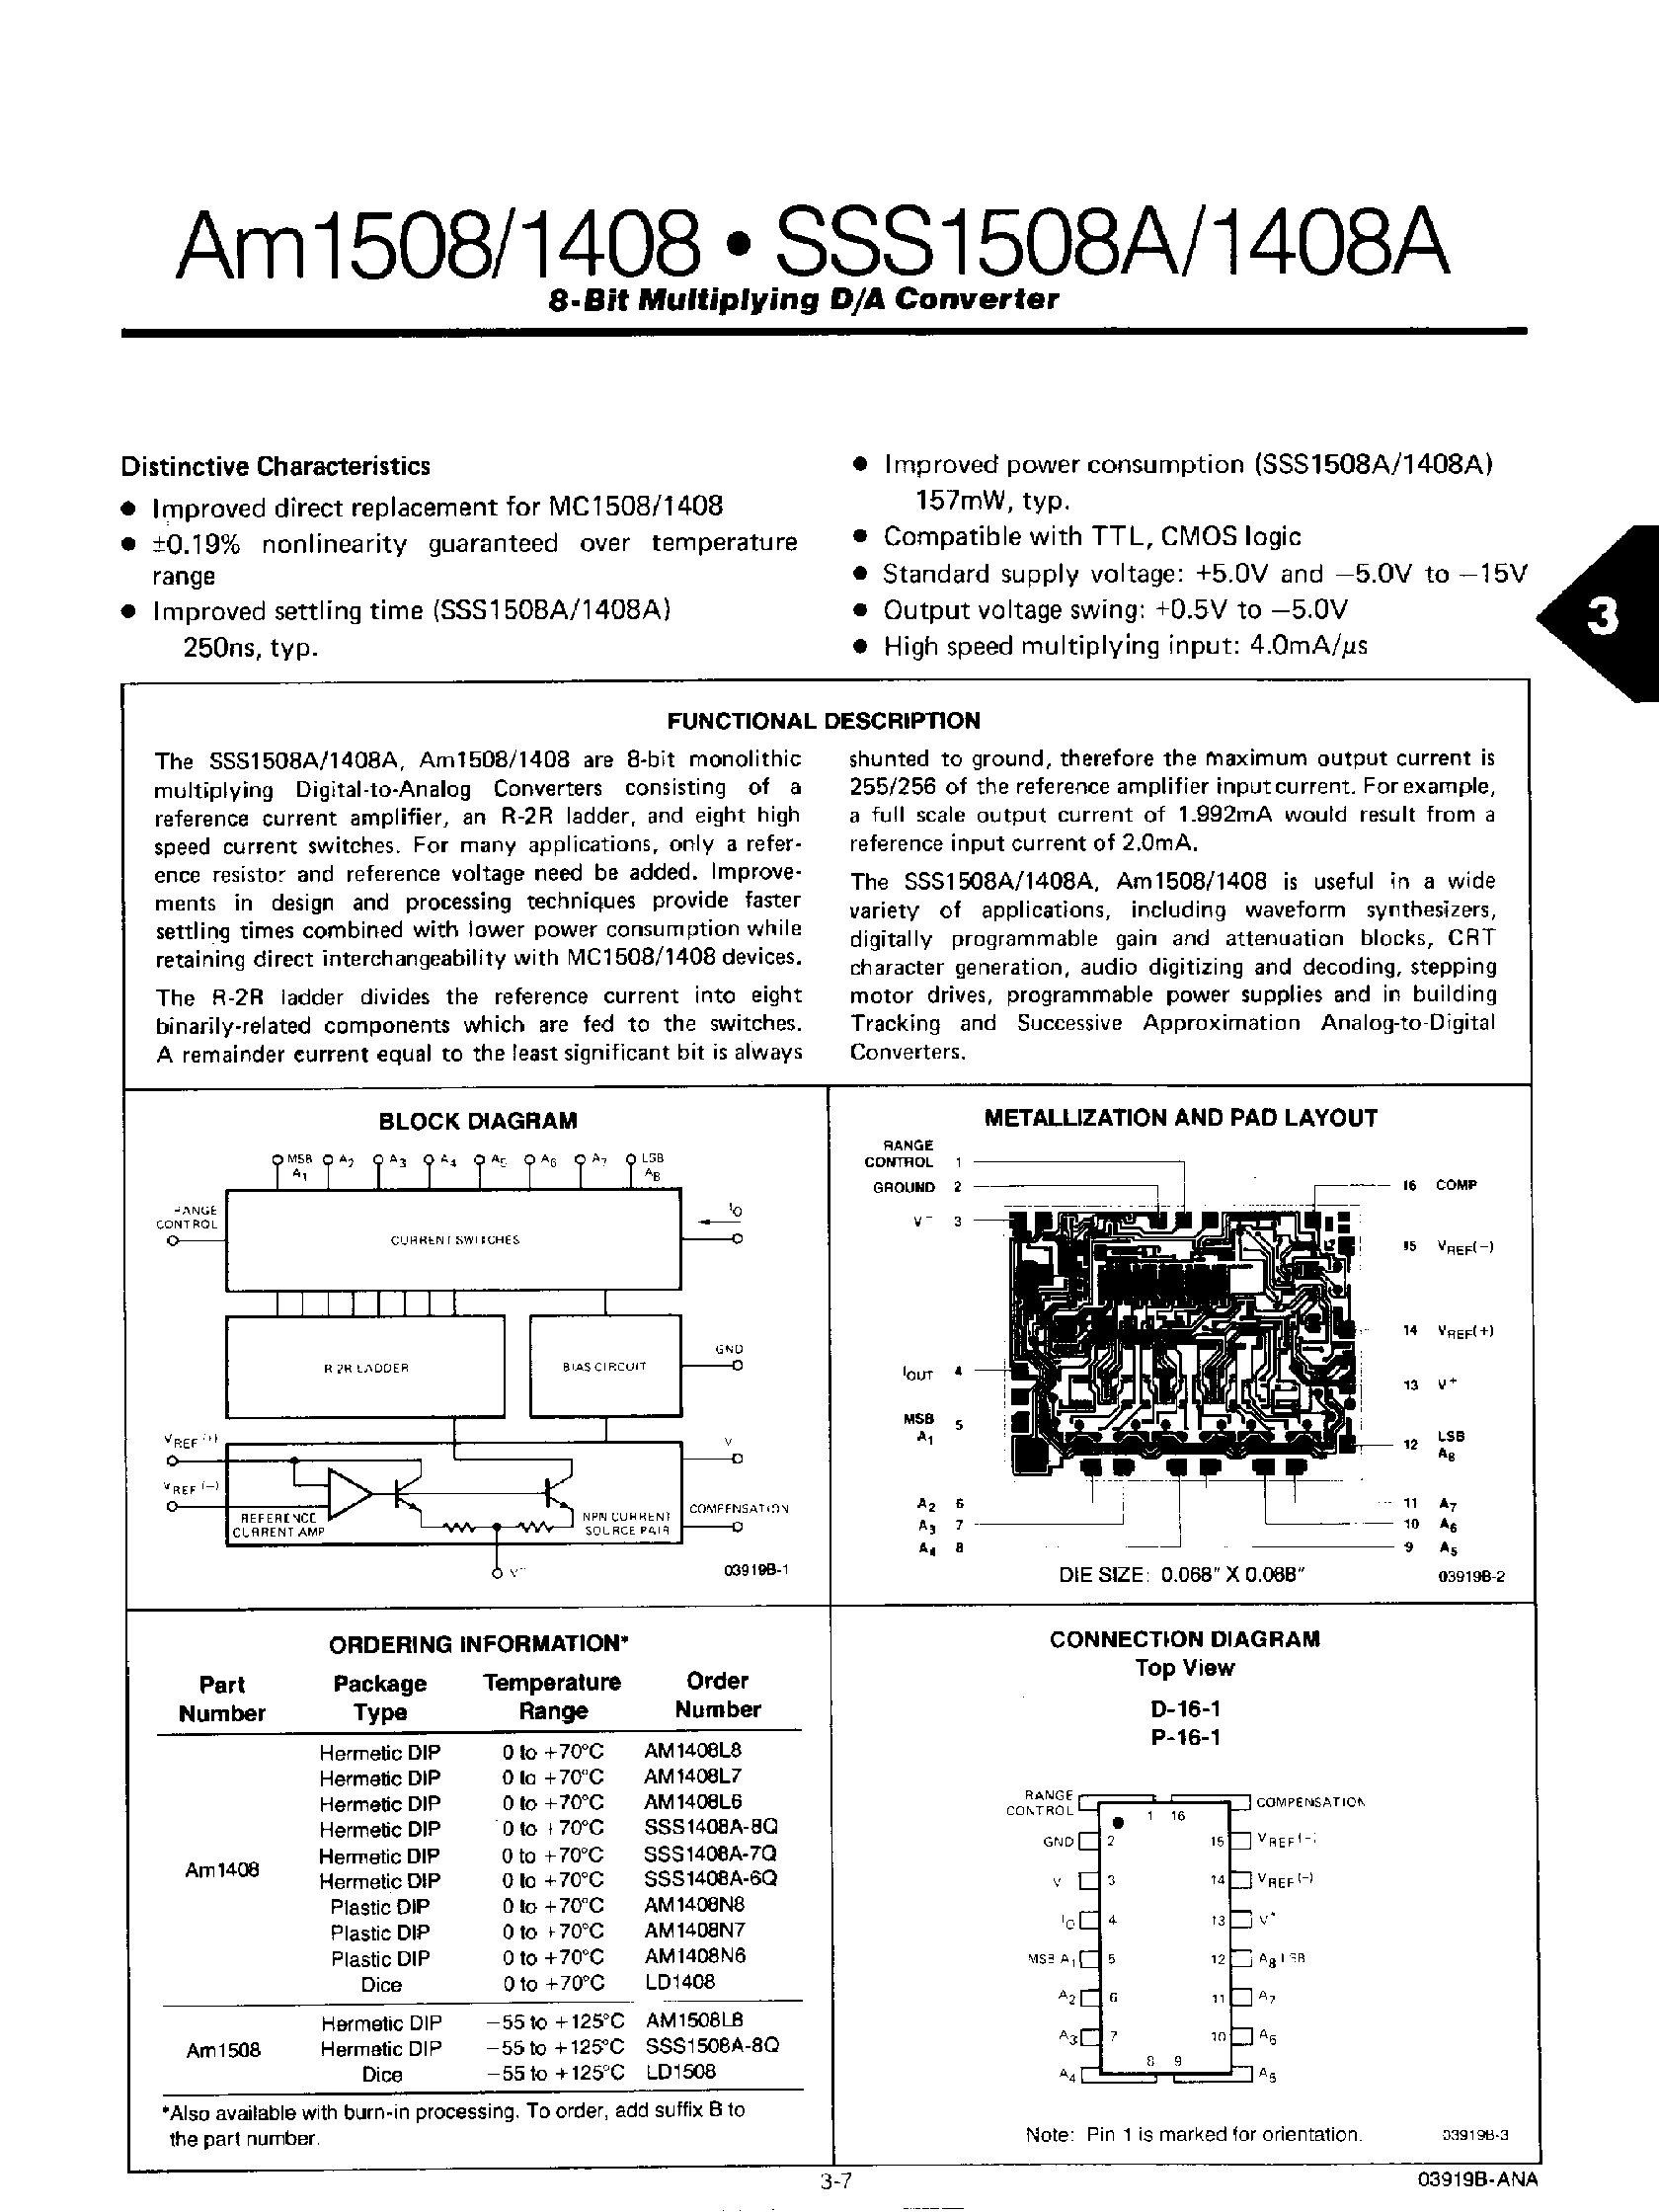 Datasheet AM1408 - (AM1408 / AM1508) 8-Bit Multiplying D/A Converter page 1